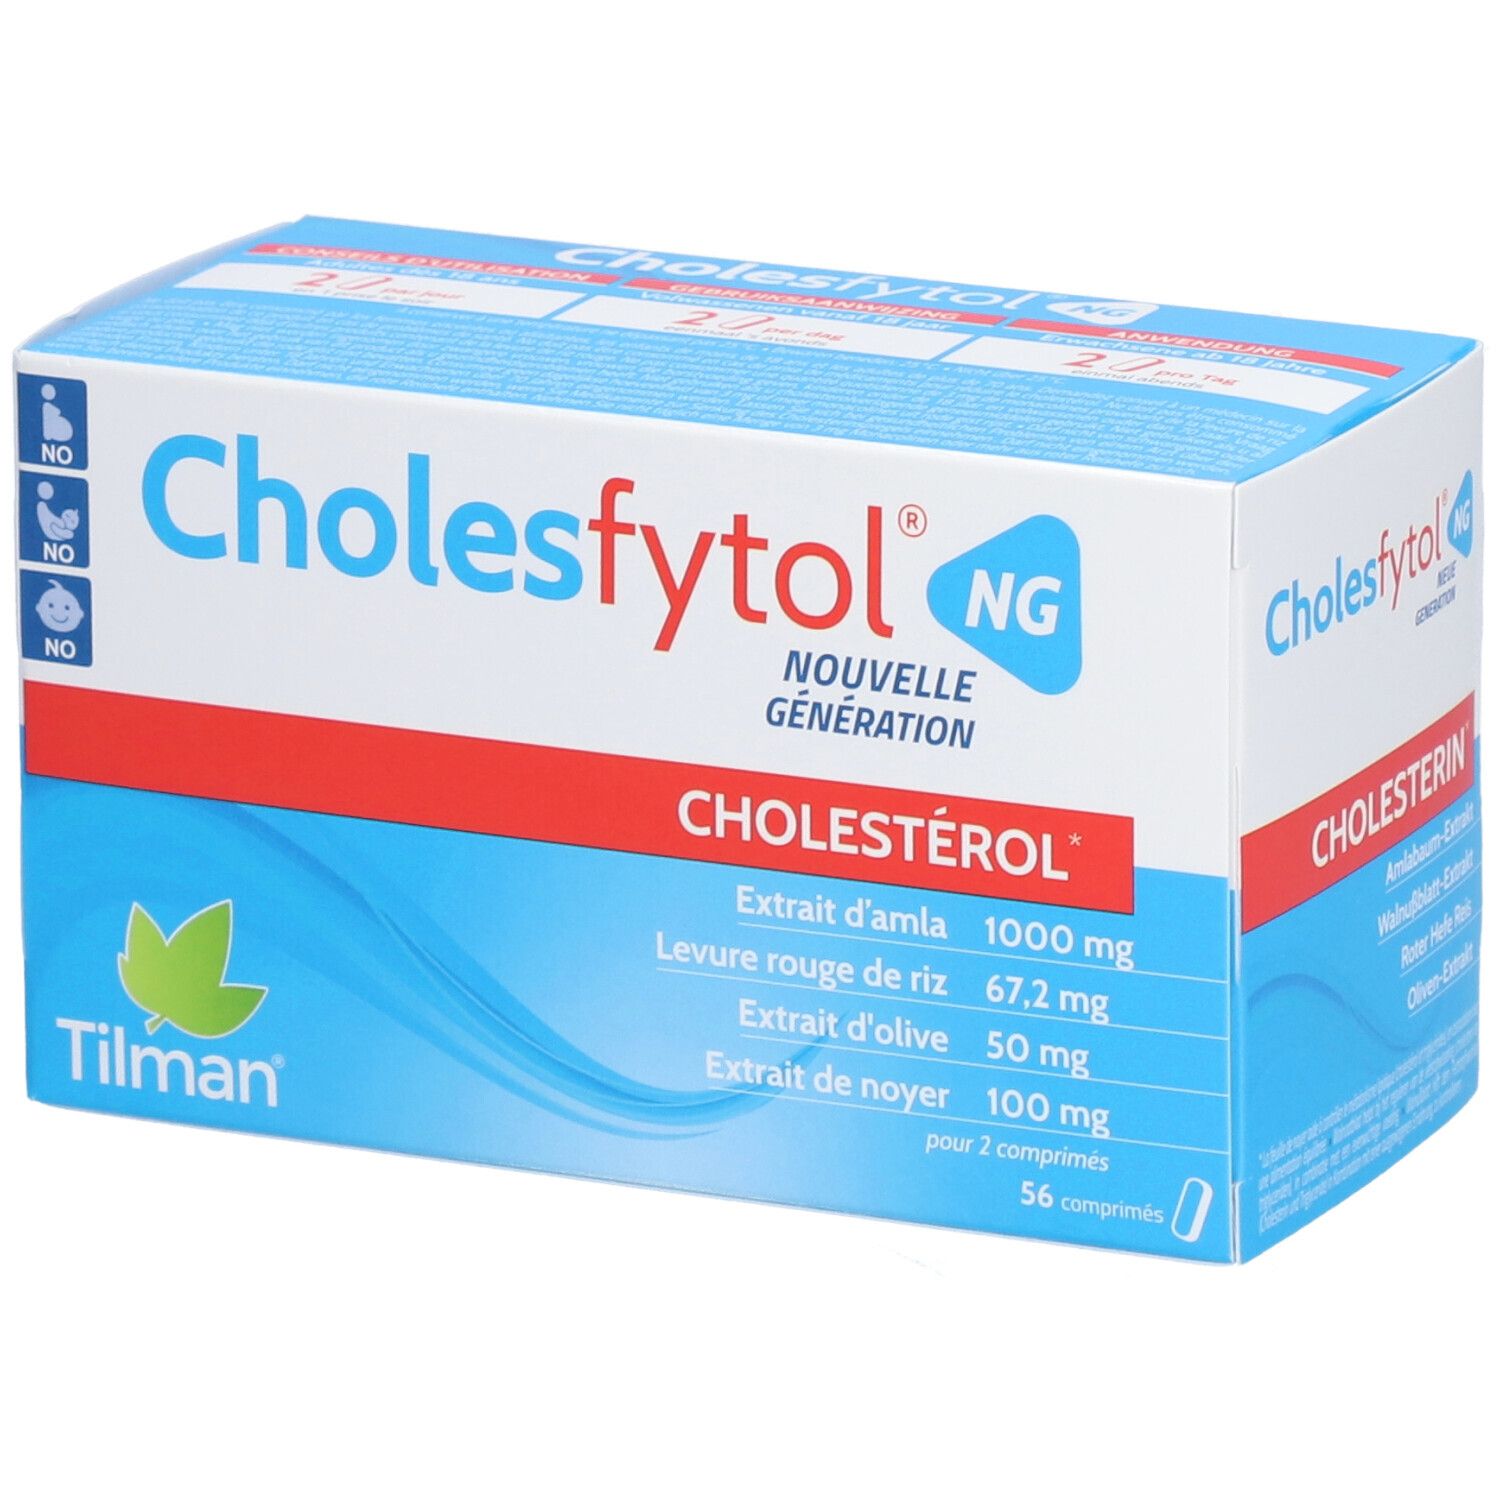 Cholesfytol® NG